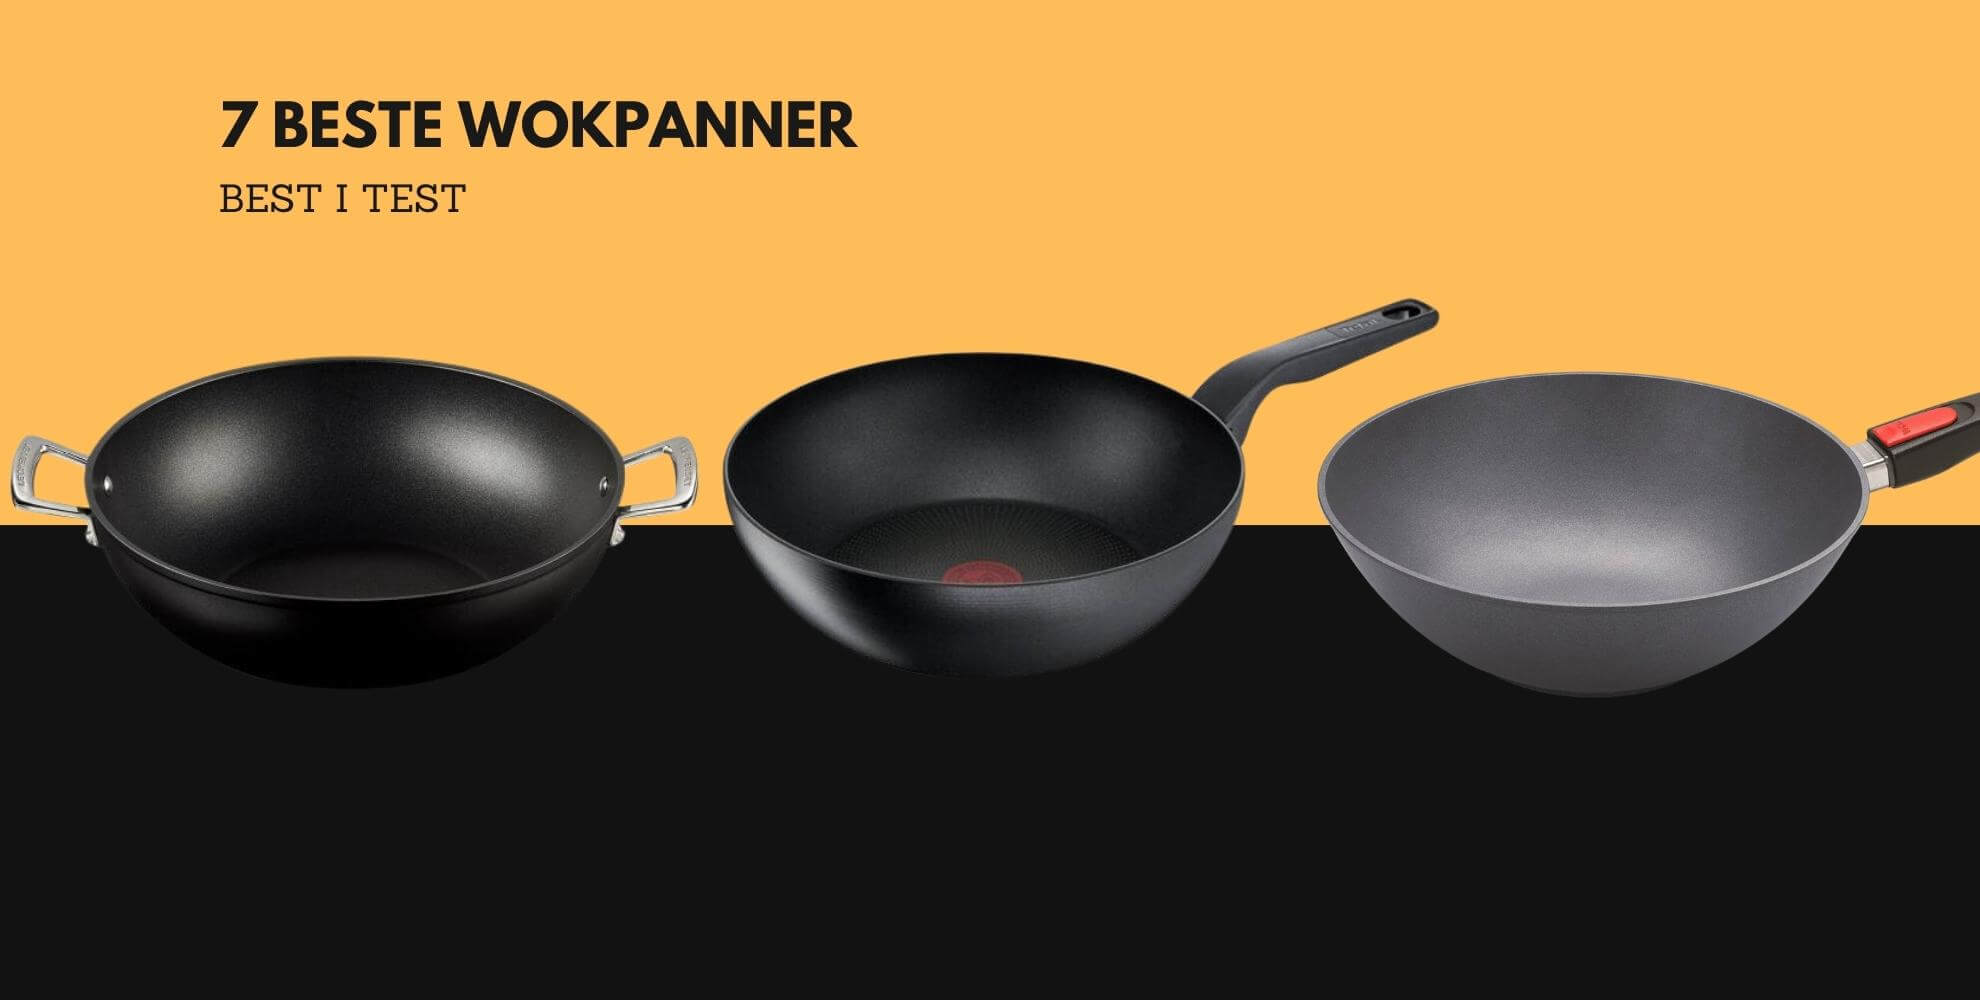 Bilde av tre wokpanner med beskrivende tekst: 7 beste wokpanner, best i test